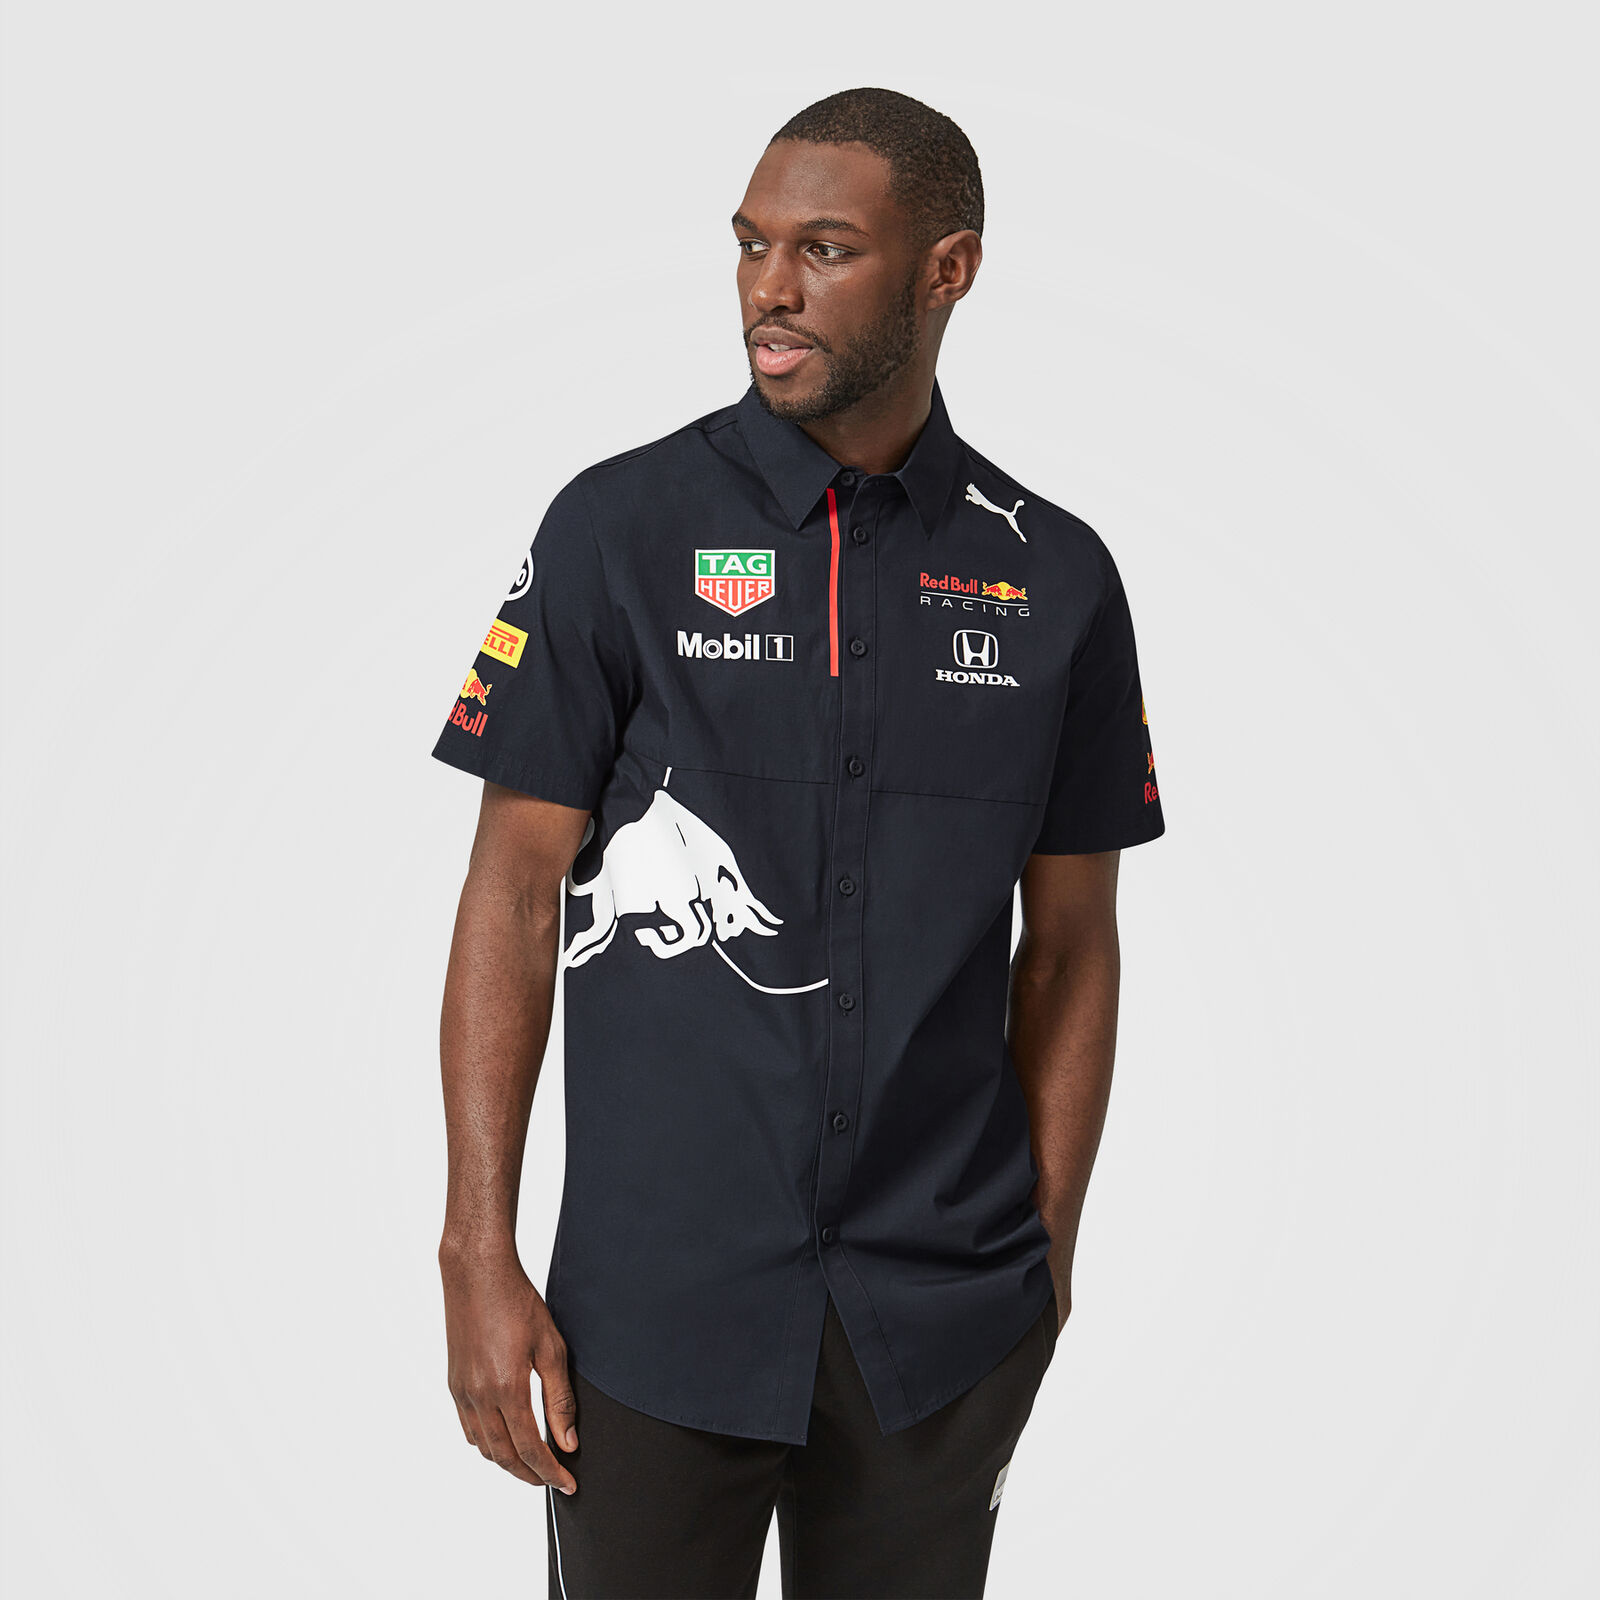 Motivación Ventilación en voz alta Camiseta del equipo 2021 - Red Bull Racing | Fuel For Fans